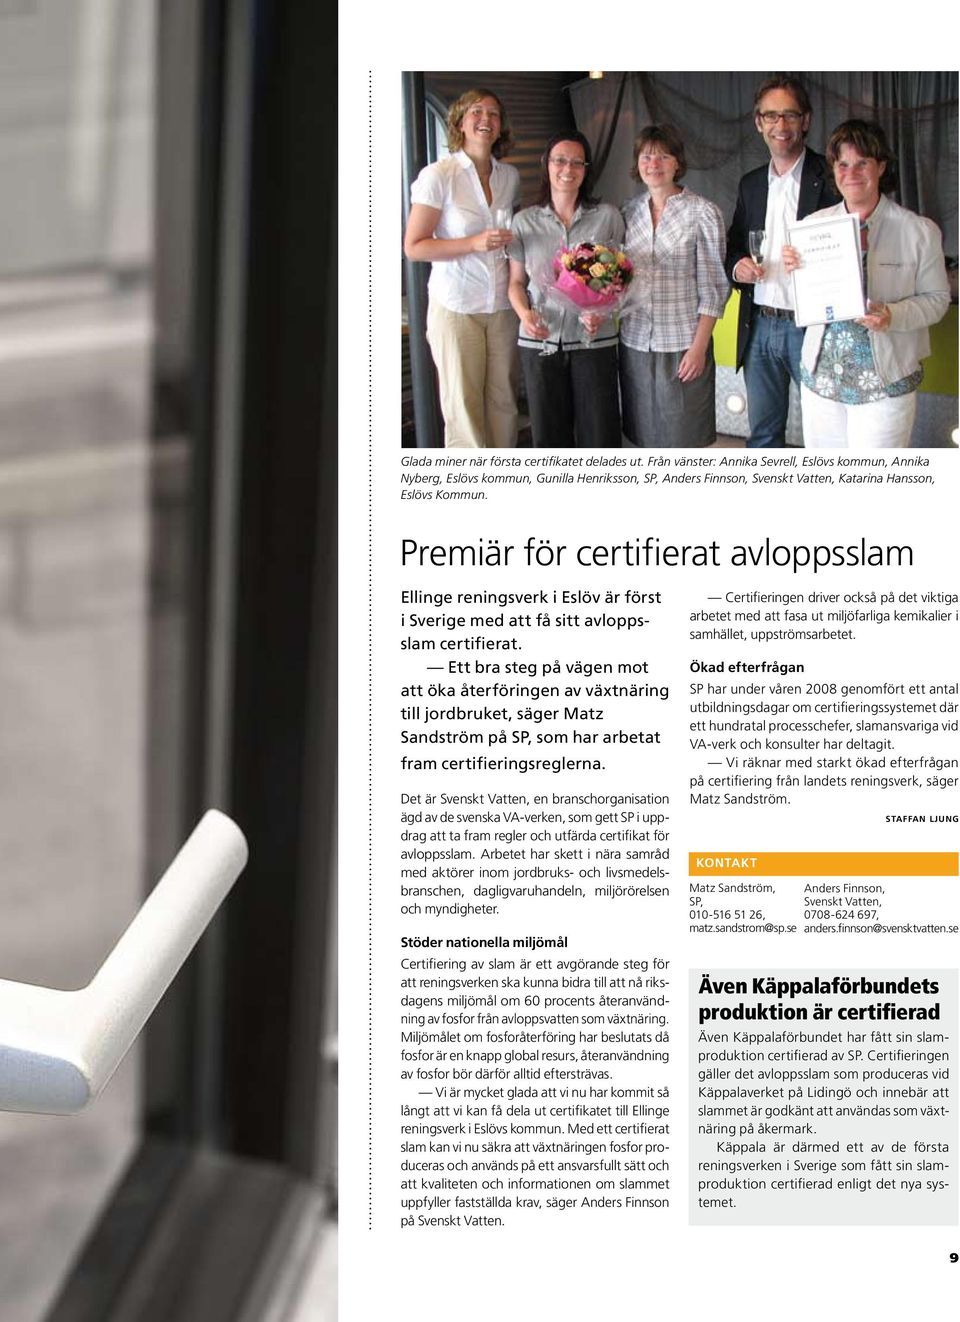 Premiär för certifierat avloppsslam Ellinge reningsverk i Eslöv är först i Sverige med att få sitt avloppsslam certifierat.